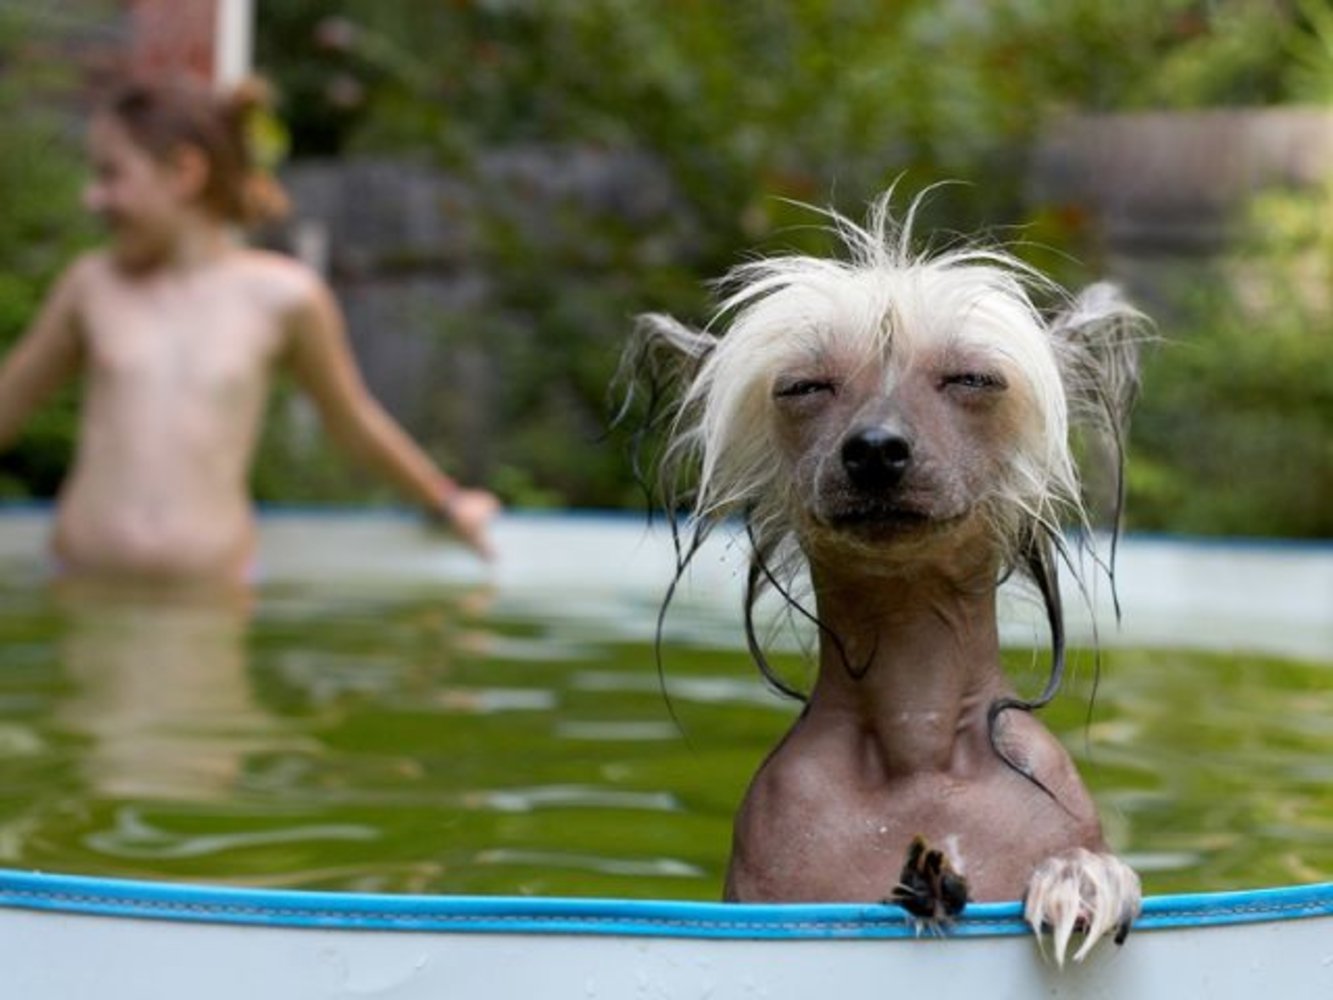 Просто очень весело. Животные купаются. Собака купается. Очень смешные фото. Очень смешно.